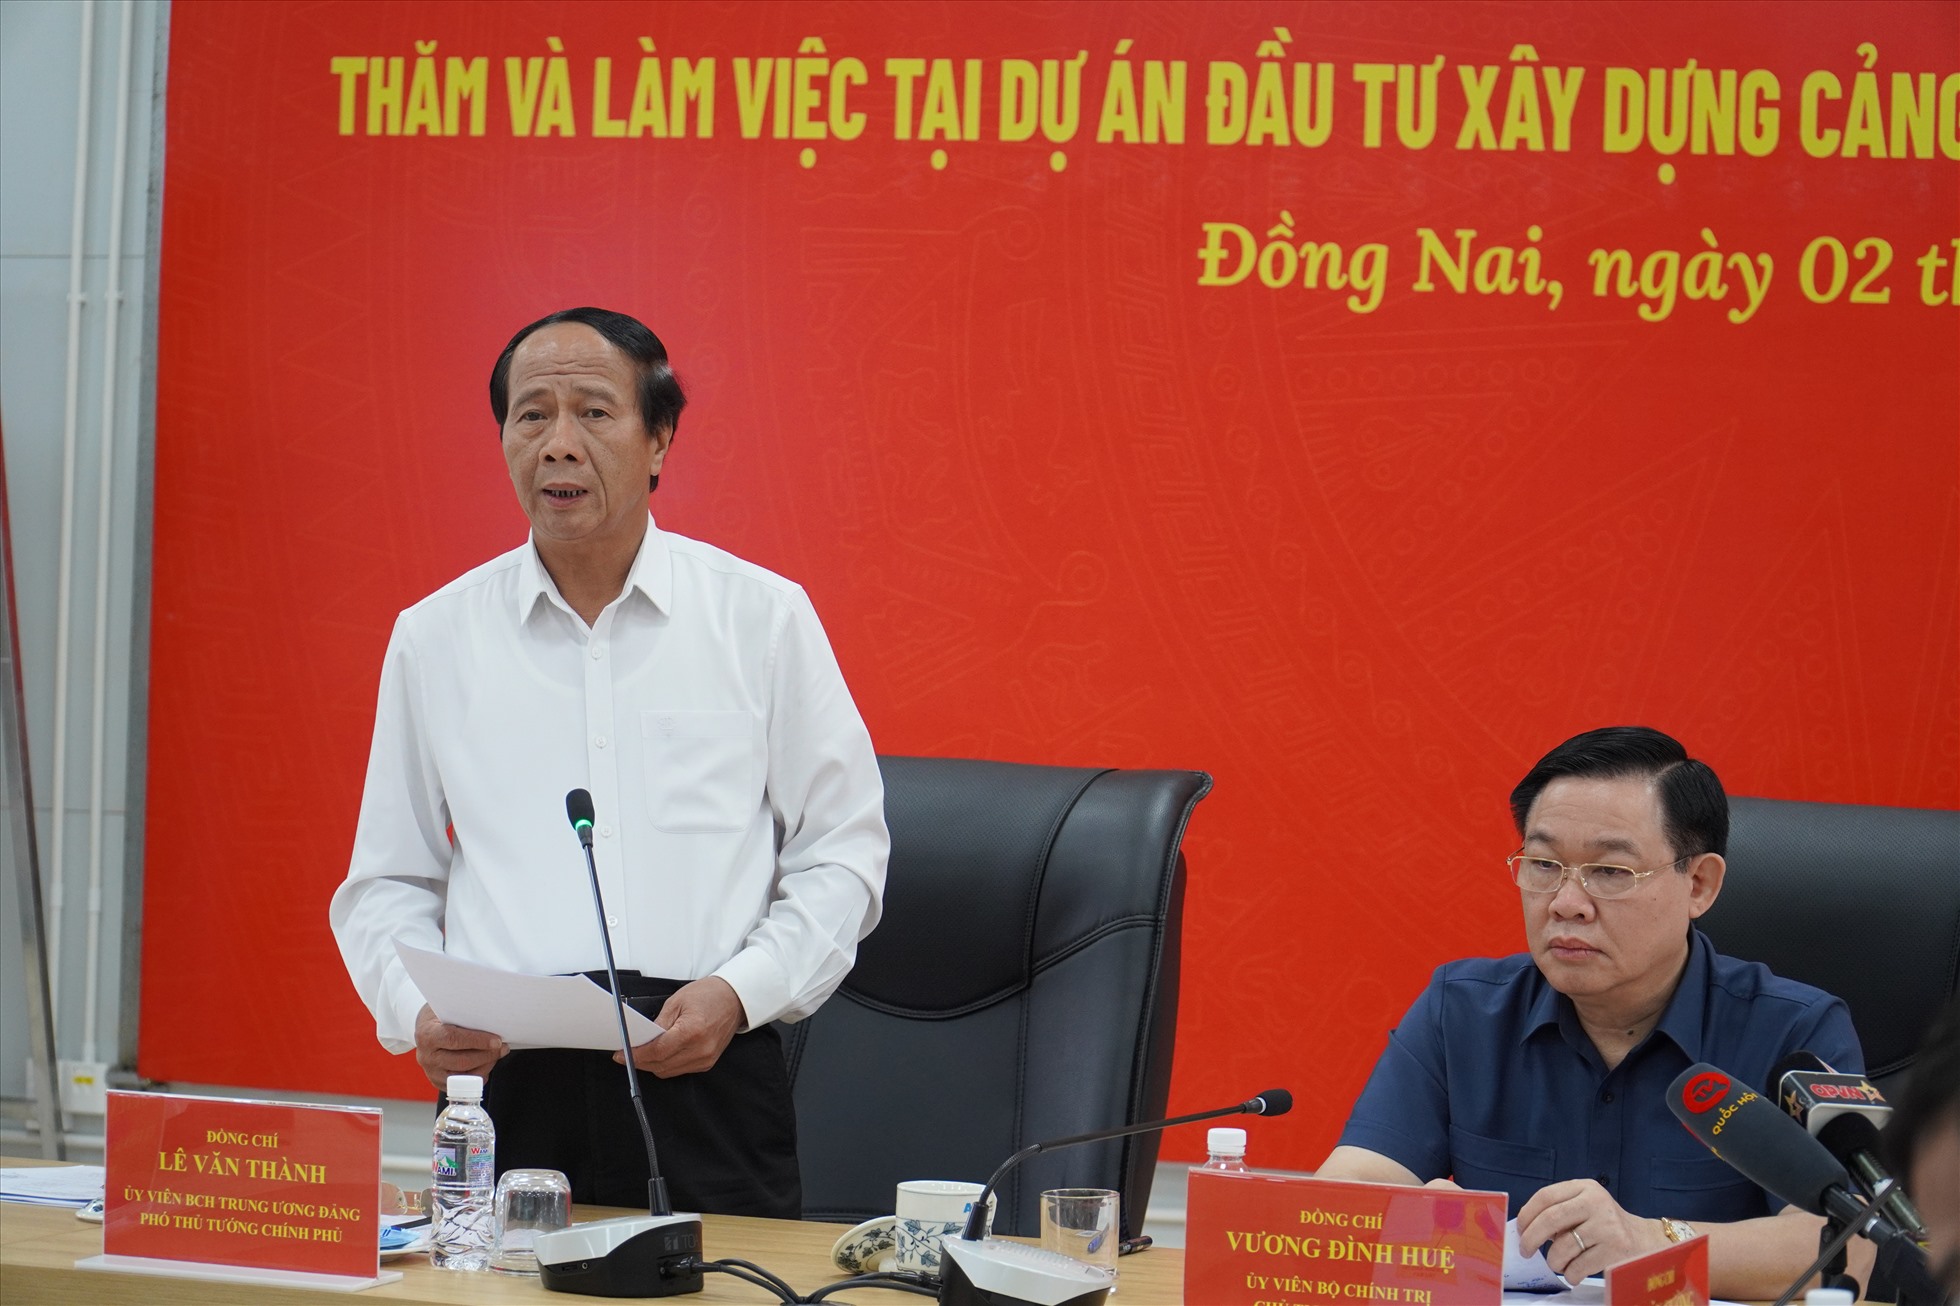 Phó thủ tướng Lê Văn Thành phát biểu tại buổi làm việc. Ảnh: Hà Anh Chiến